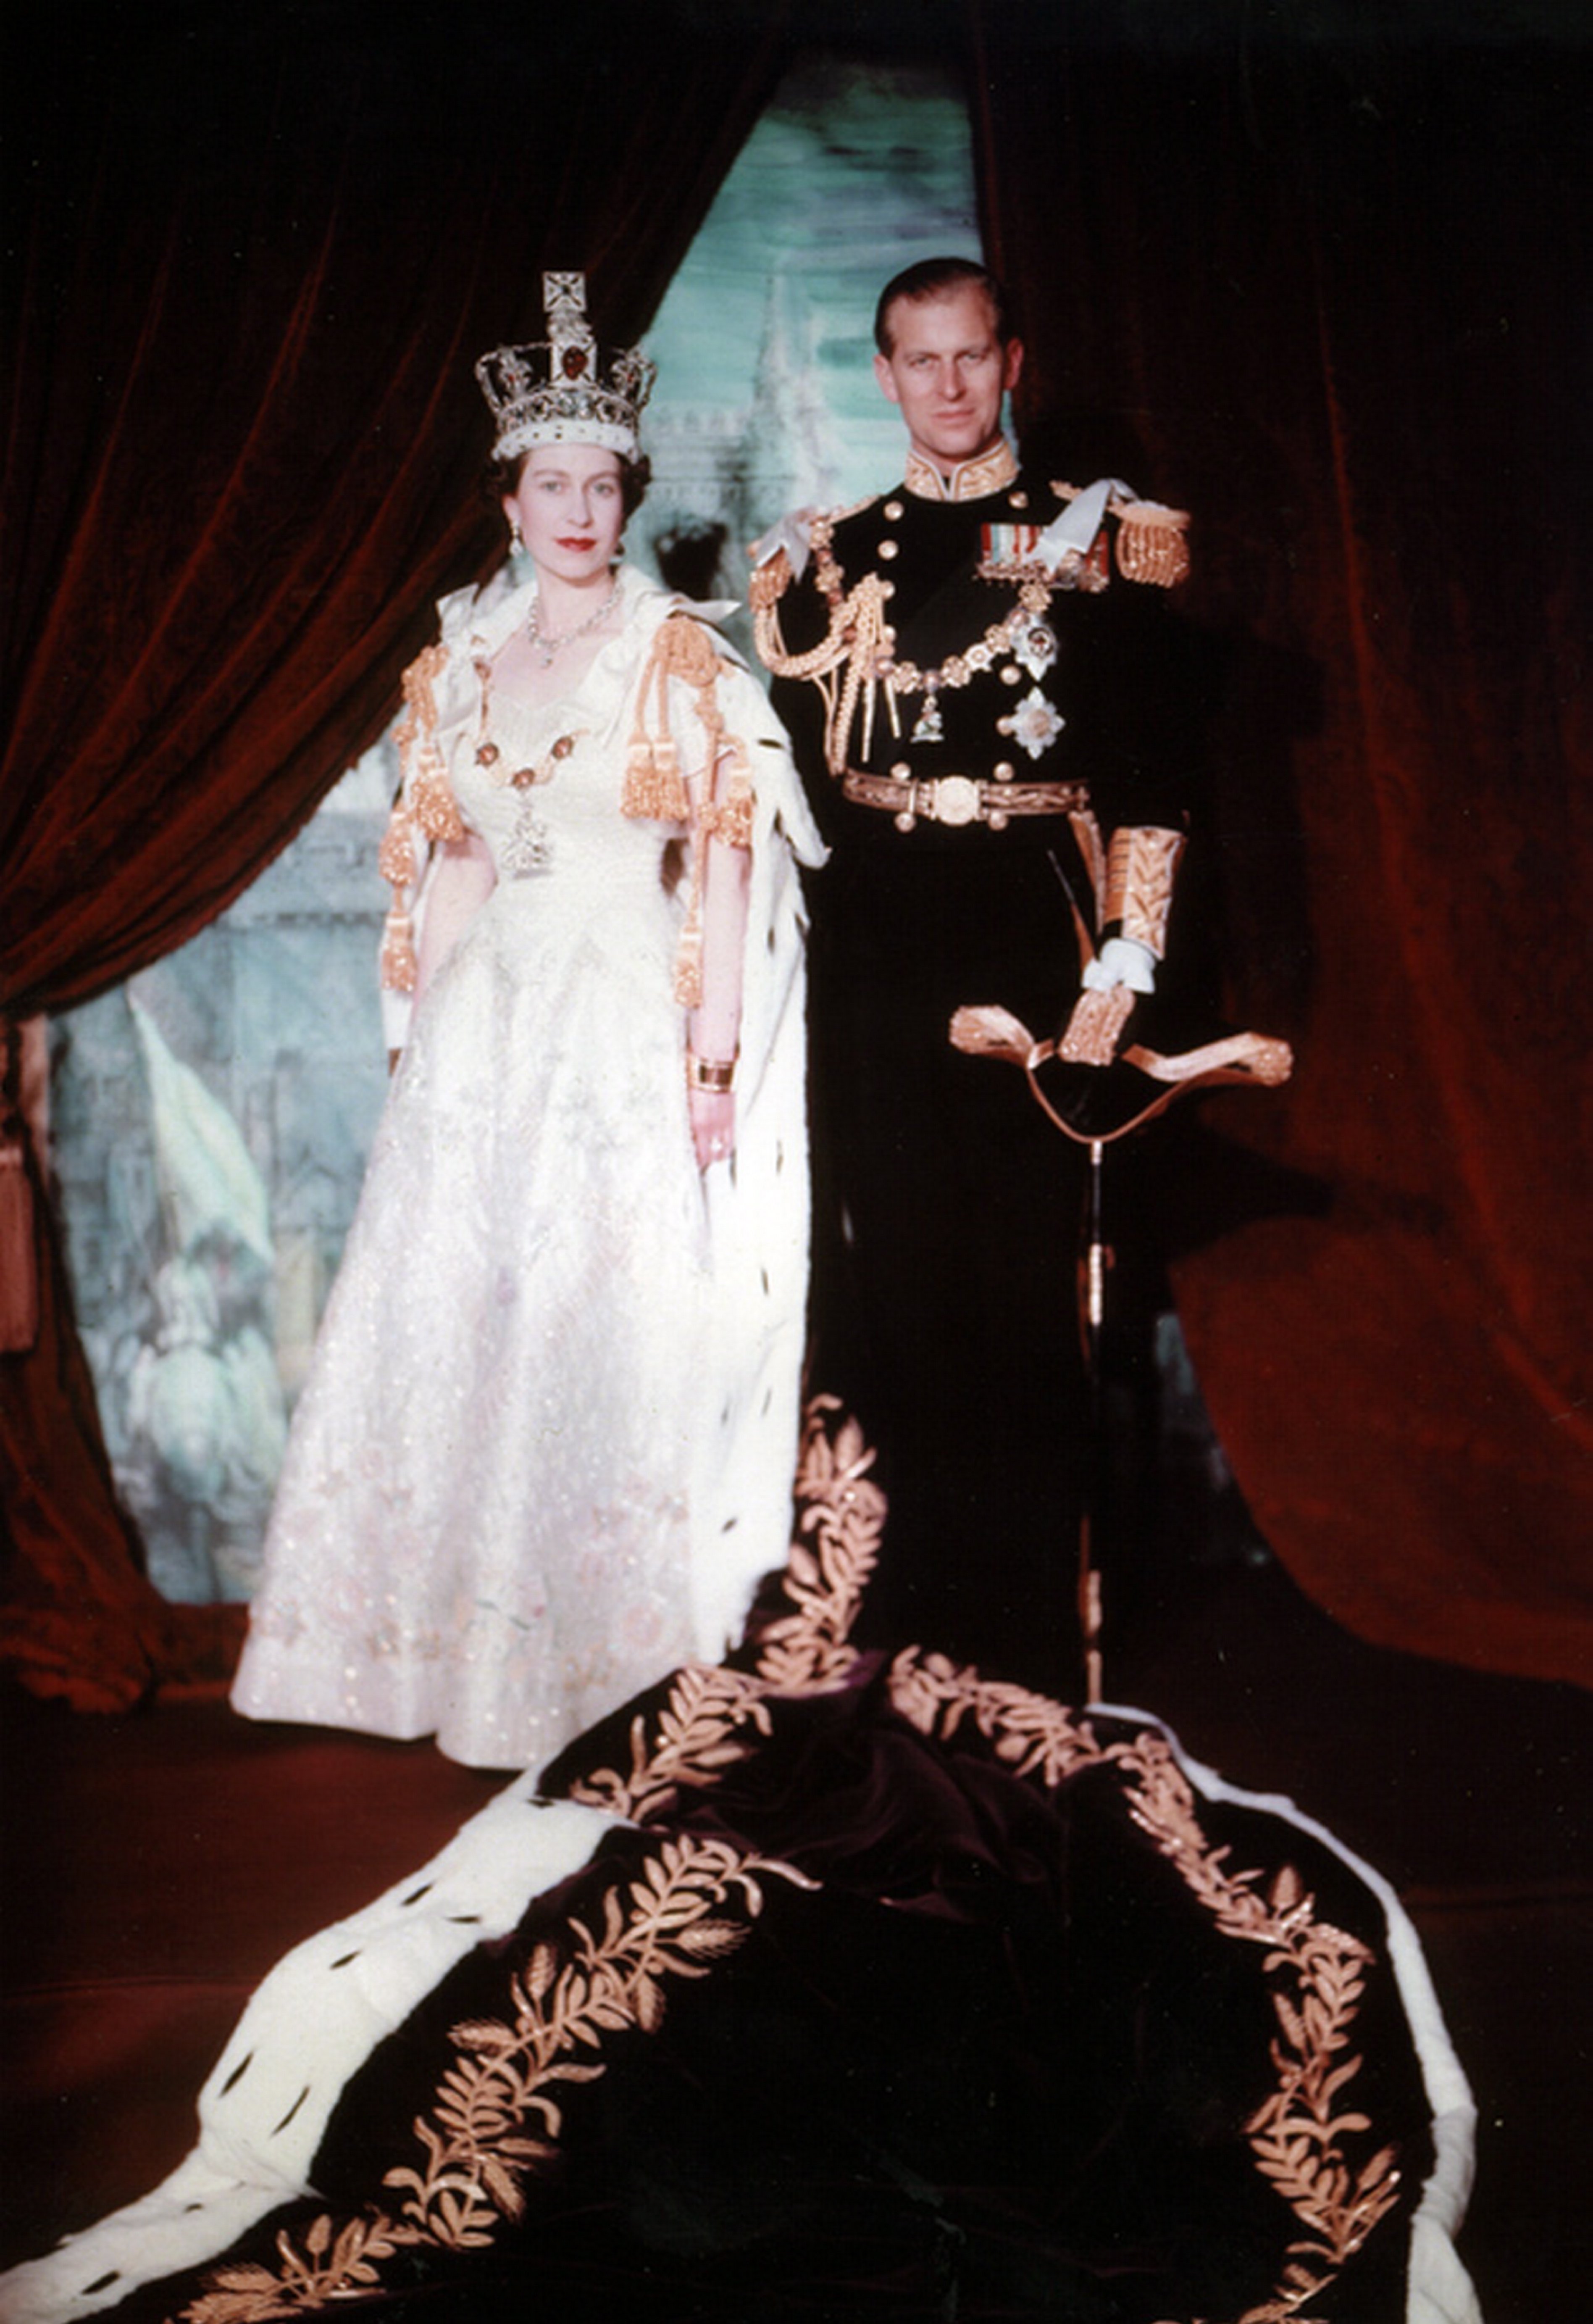 La reina Elizbath II, de Inglaterra, con su consorte, el príncipe Philip, después de la coronación en 1953. | Foto: Getty Images